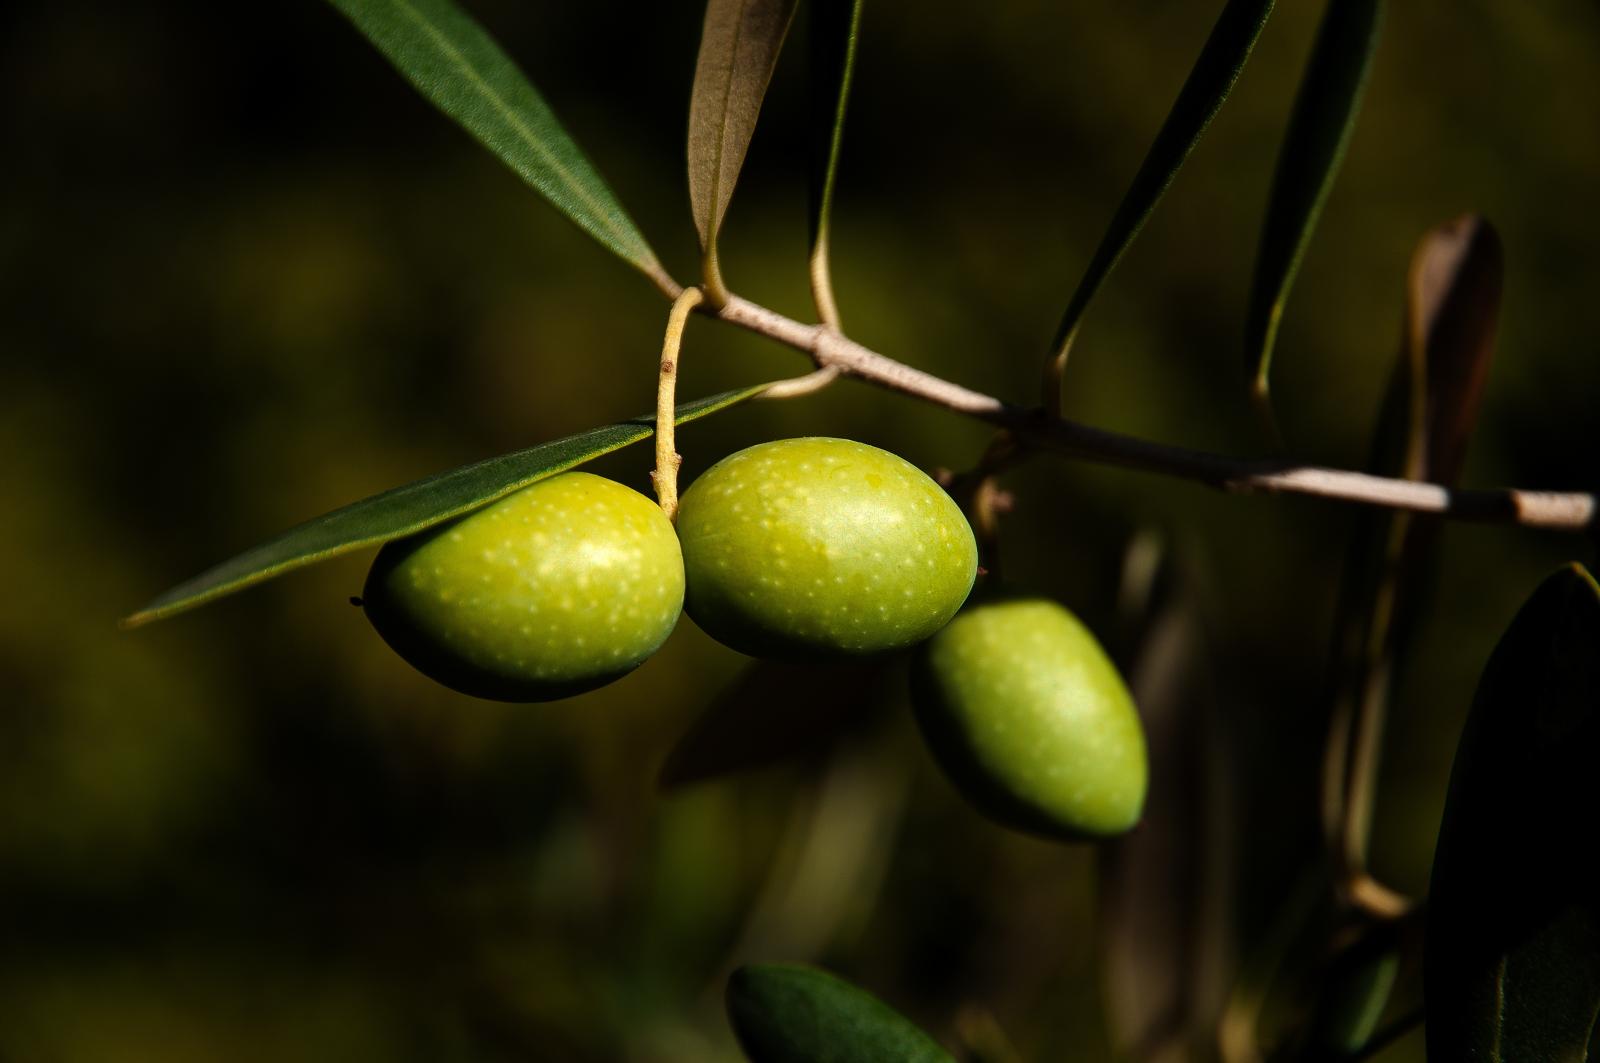 Creazione sito web produttore olio extravergine d'oliva: Frantoio Pace Leone - Maingage, Web agency Bari